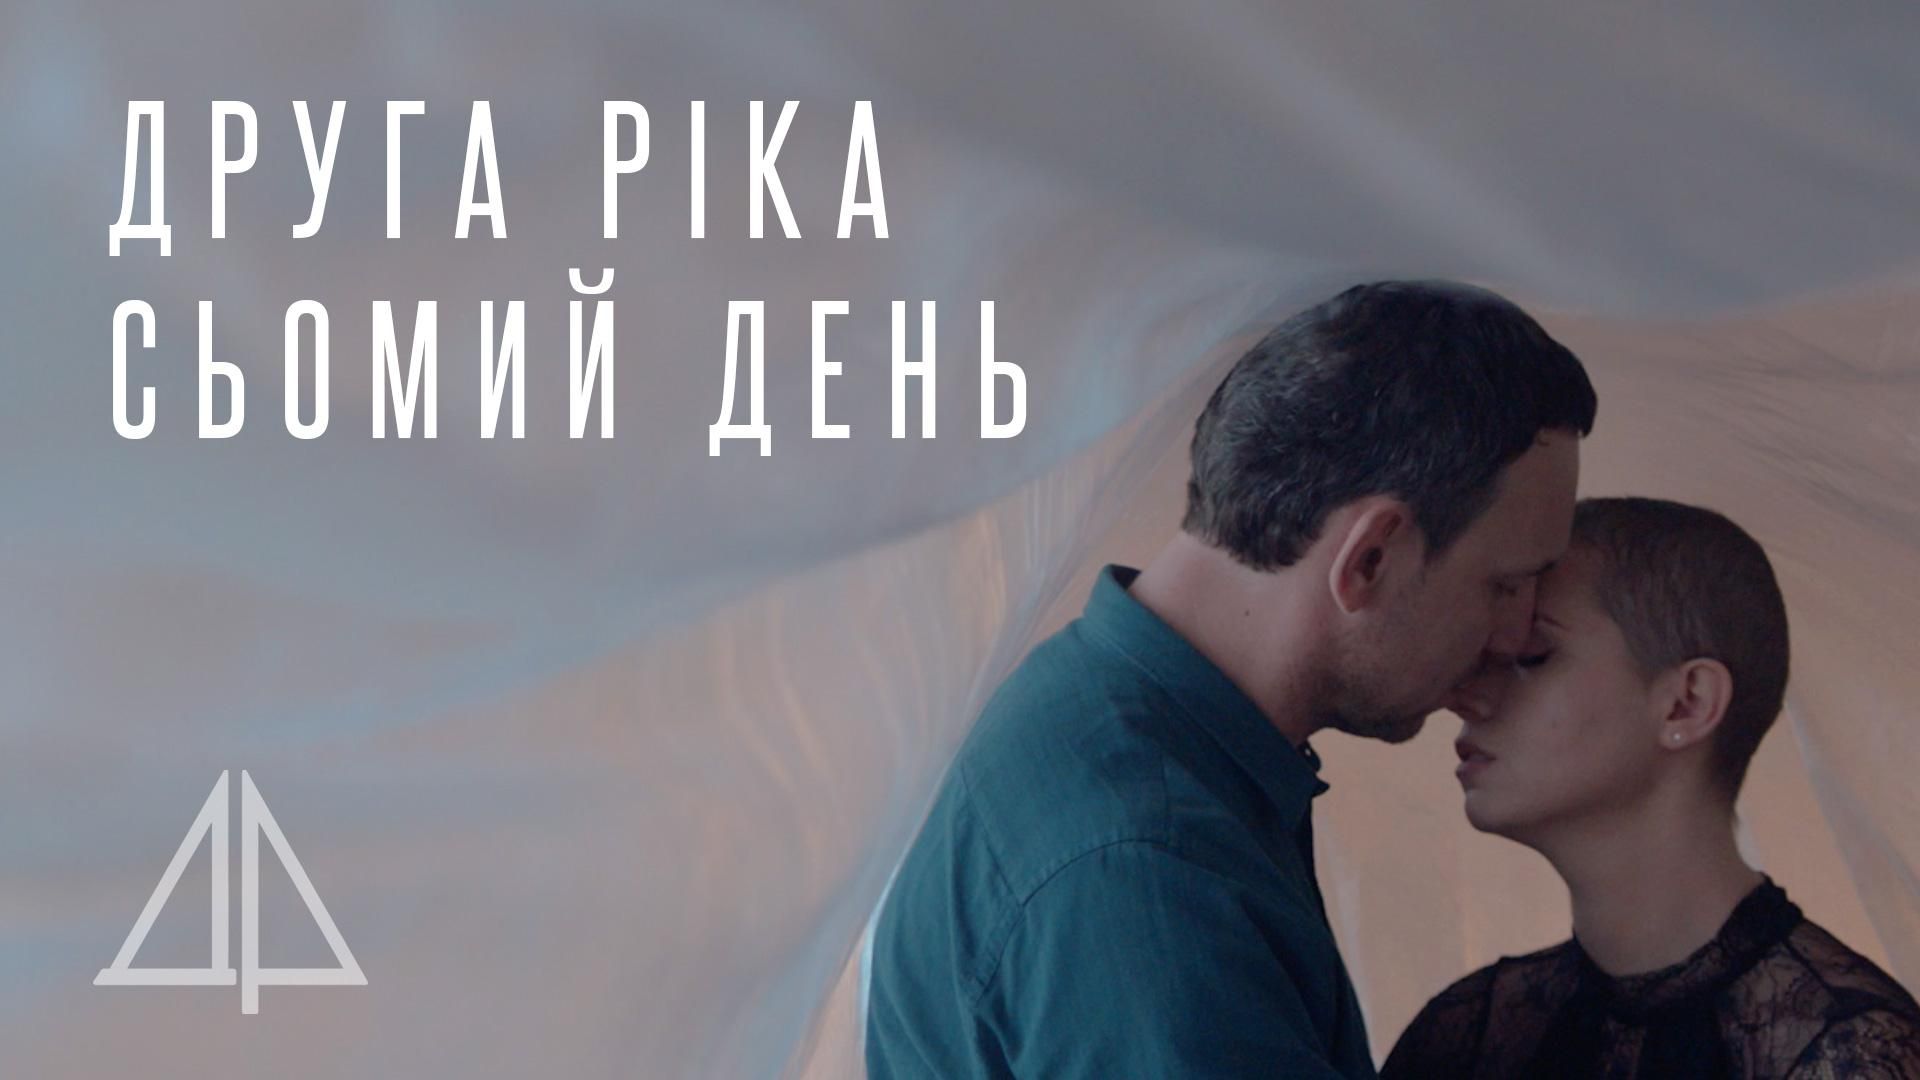 Яніна Соколова і "Друга Ріка" представили кліп "Сьомий день", присвячений онкохворим людям